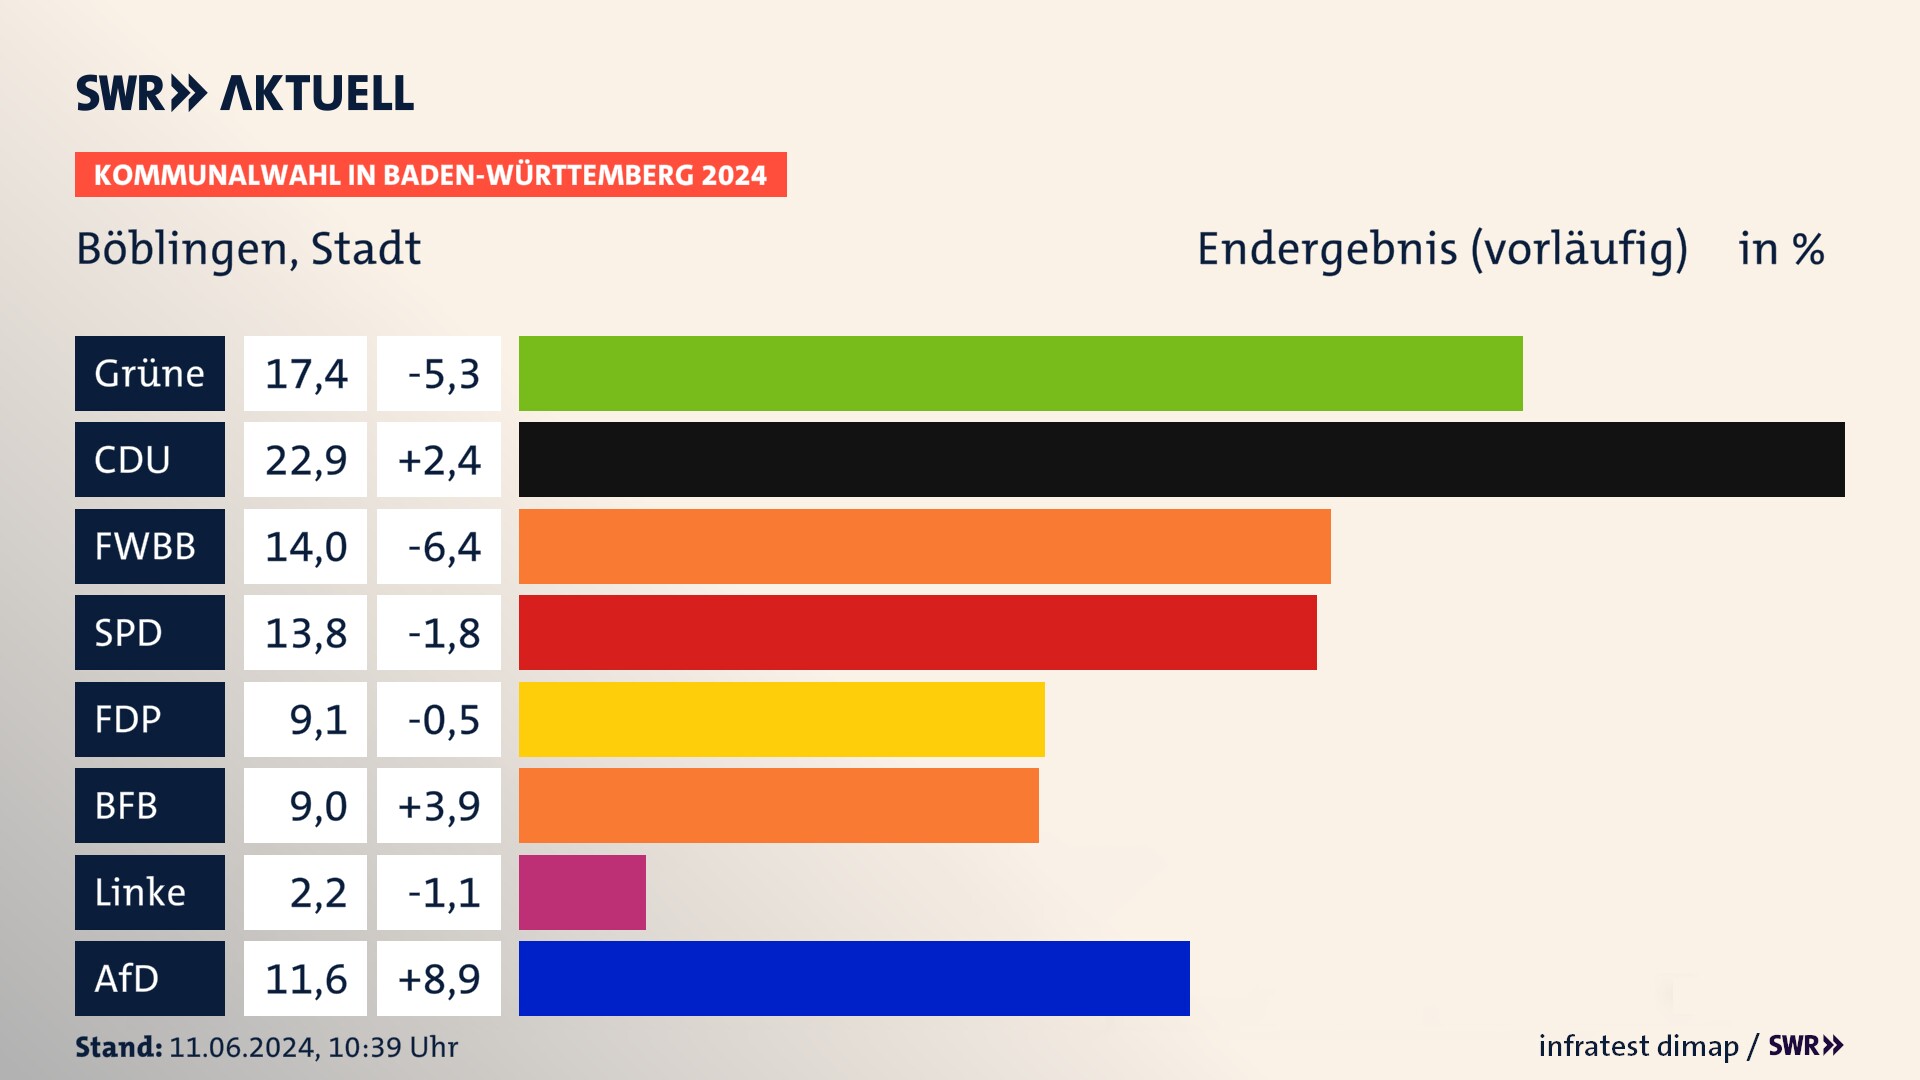 Kommunalwahl 2024 Vorlaeufigesendergebnis Zweitstimme für Böblingen. In Böblingen, Stadt erzielen die Grünen 17,4 Prozent der gültigen  Stimmen. Die CDU landet bei 22,9 Prozent. Die Wählervereinigung FWBB erreicht 14,0 Prozent. Die SPD kommt auf 13,8 Prozent. Die FDP landet bei 9,1 Prozent. Die AfD erreicht 11,6 Prozent.